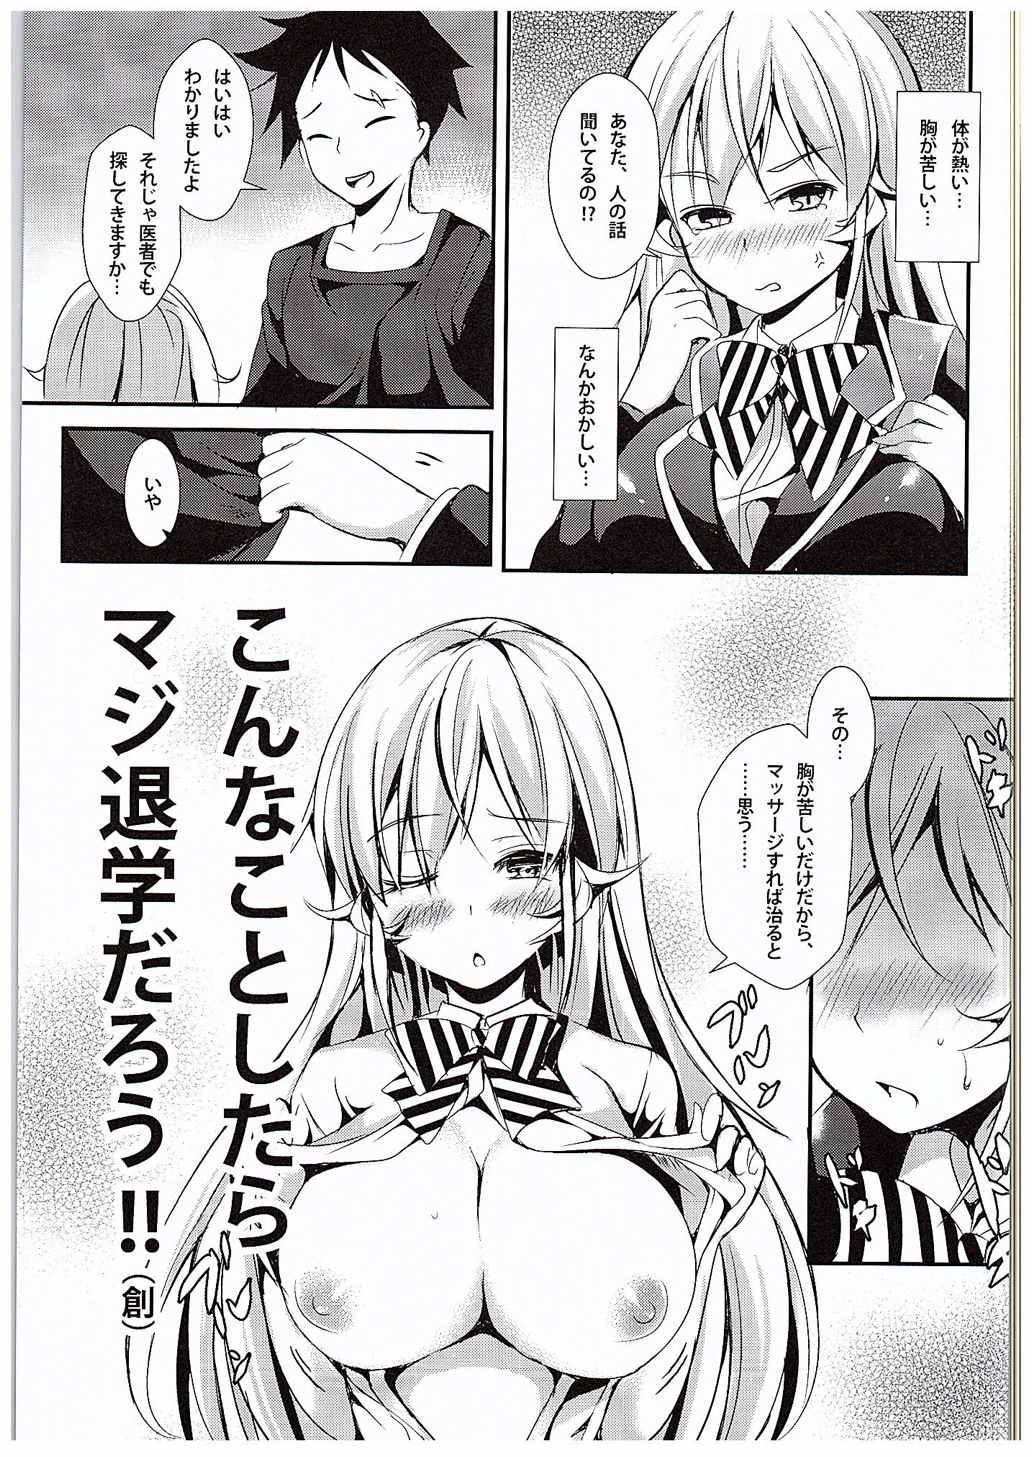 Tits Erina to Shoujo Manga - Shokugeki no soma Spooning - Page 6